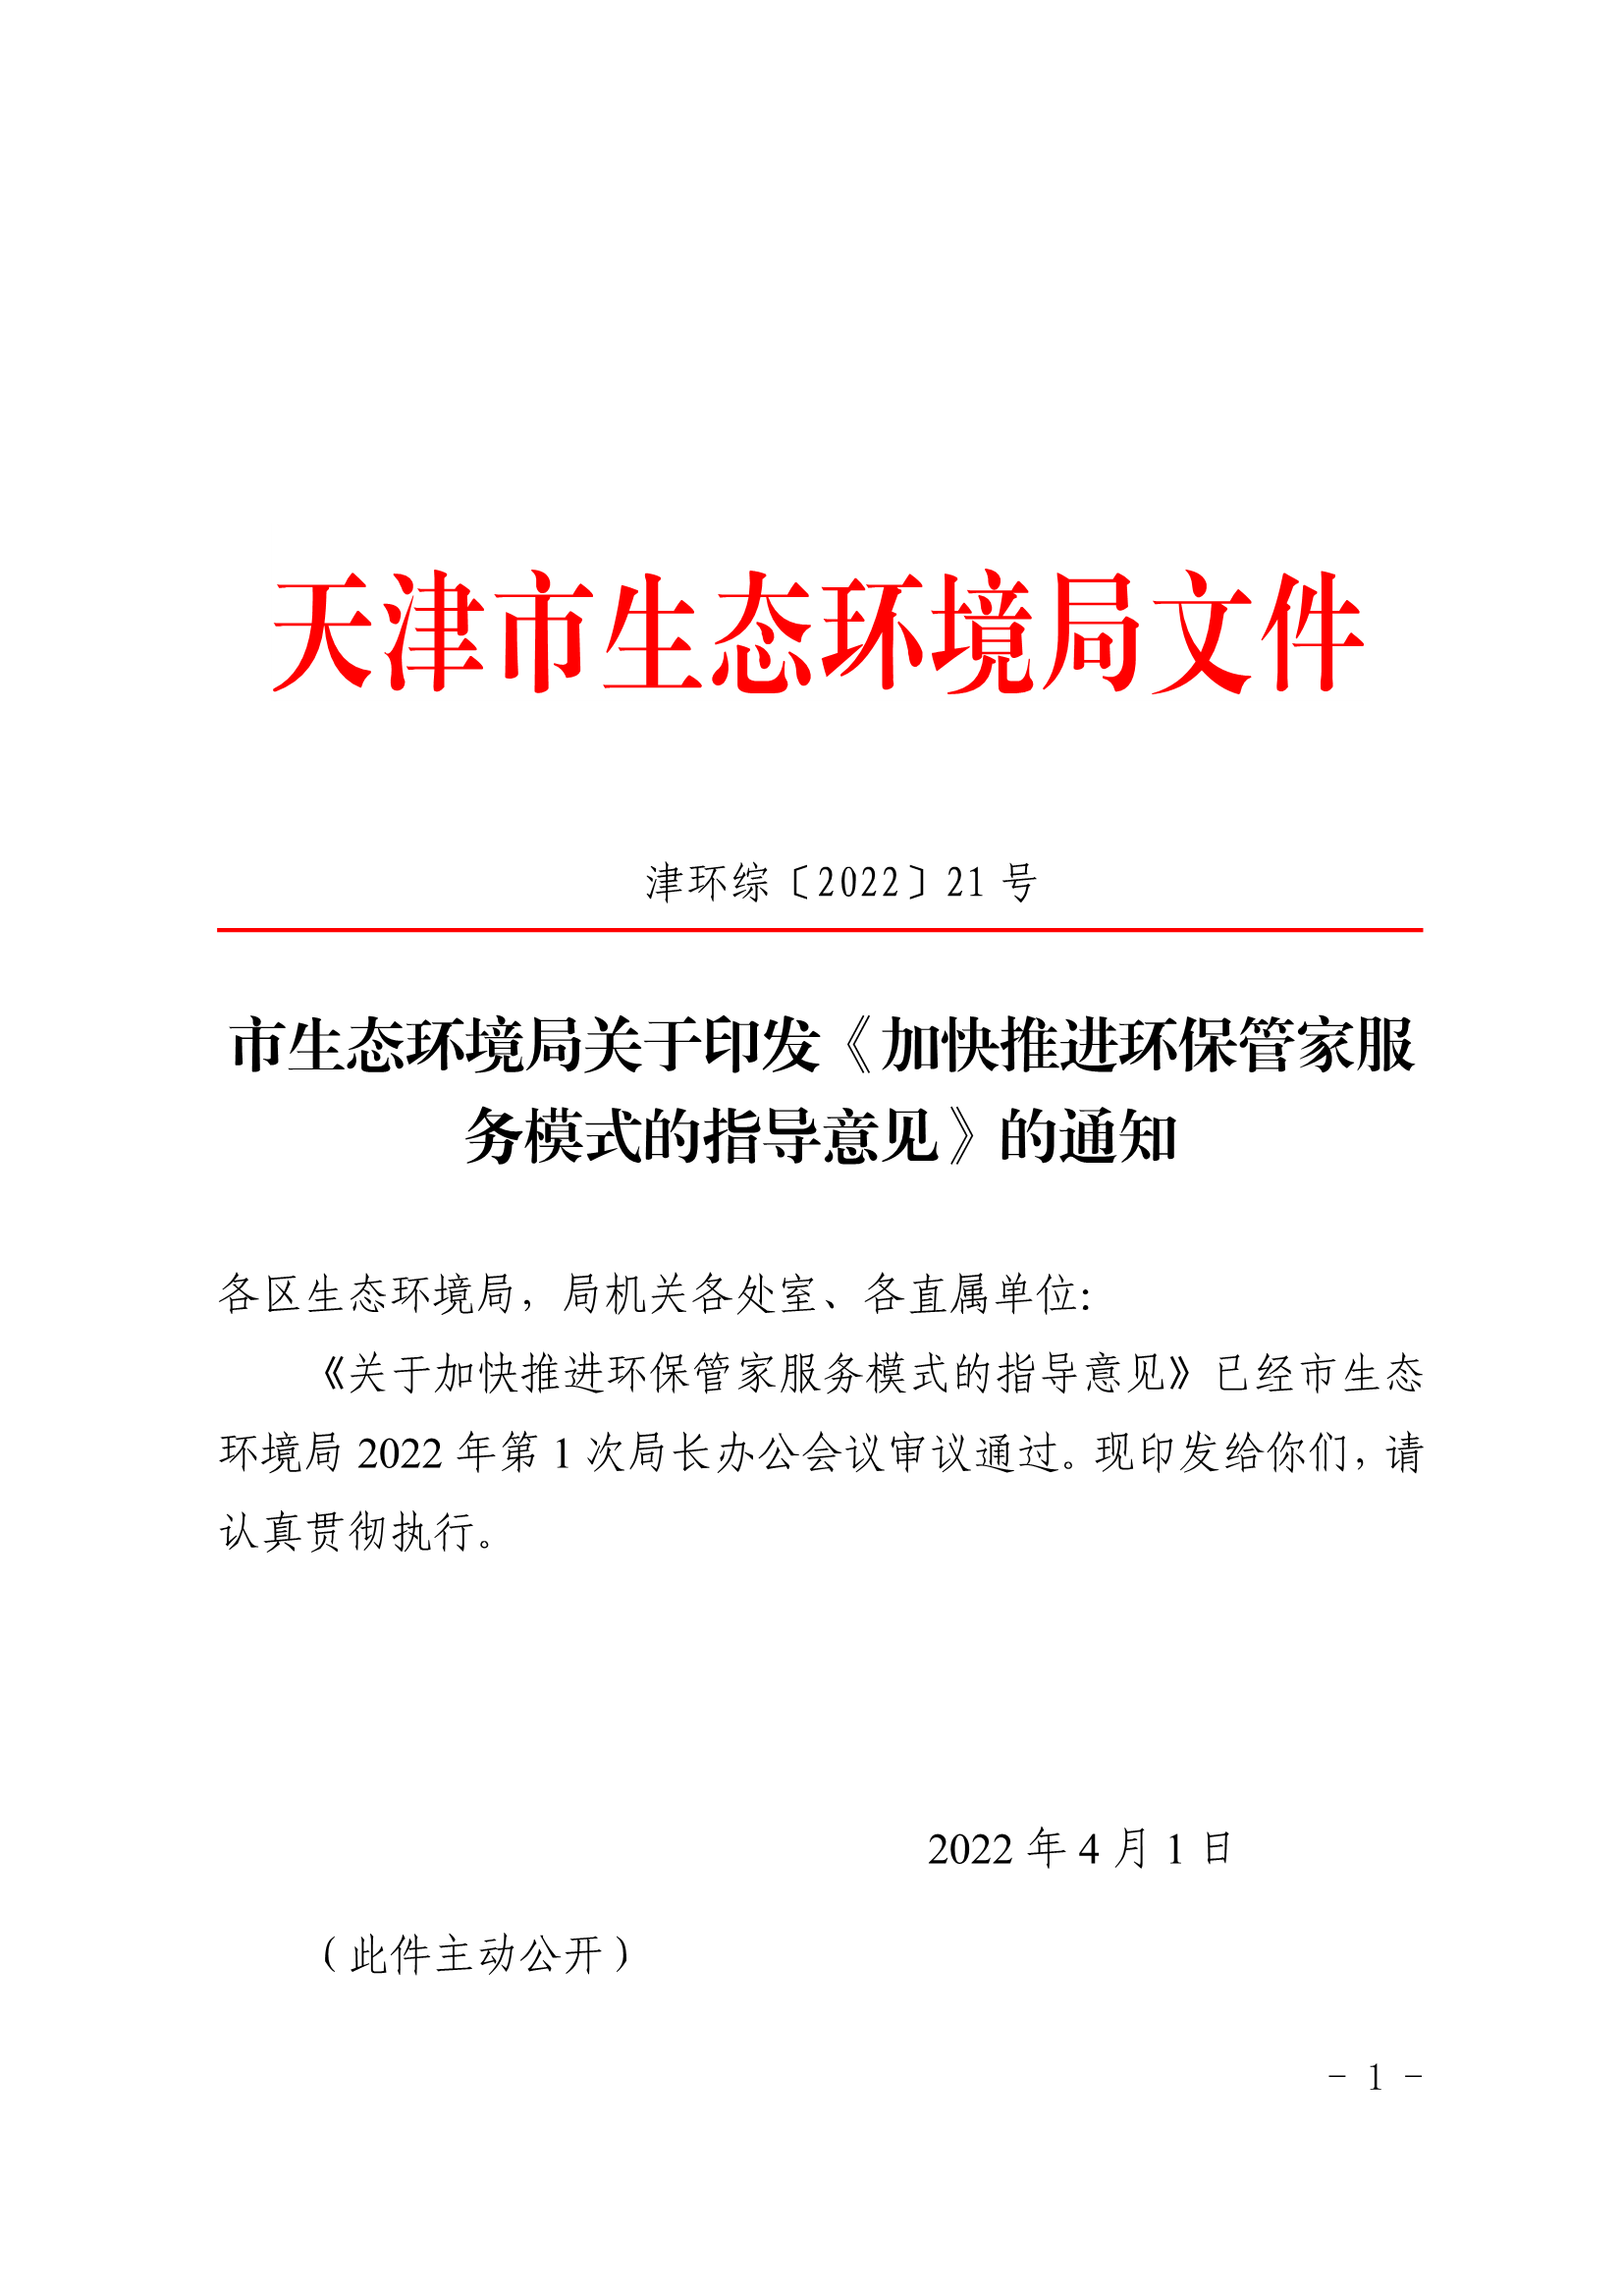 天津市印发《加速推动环保管家服务形式的辅导定见》